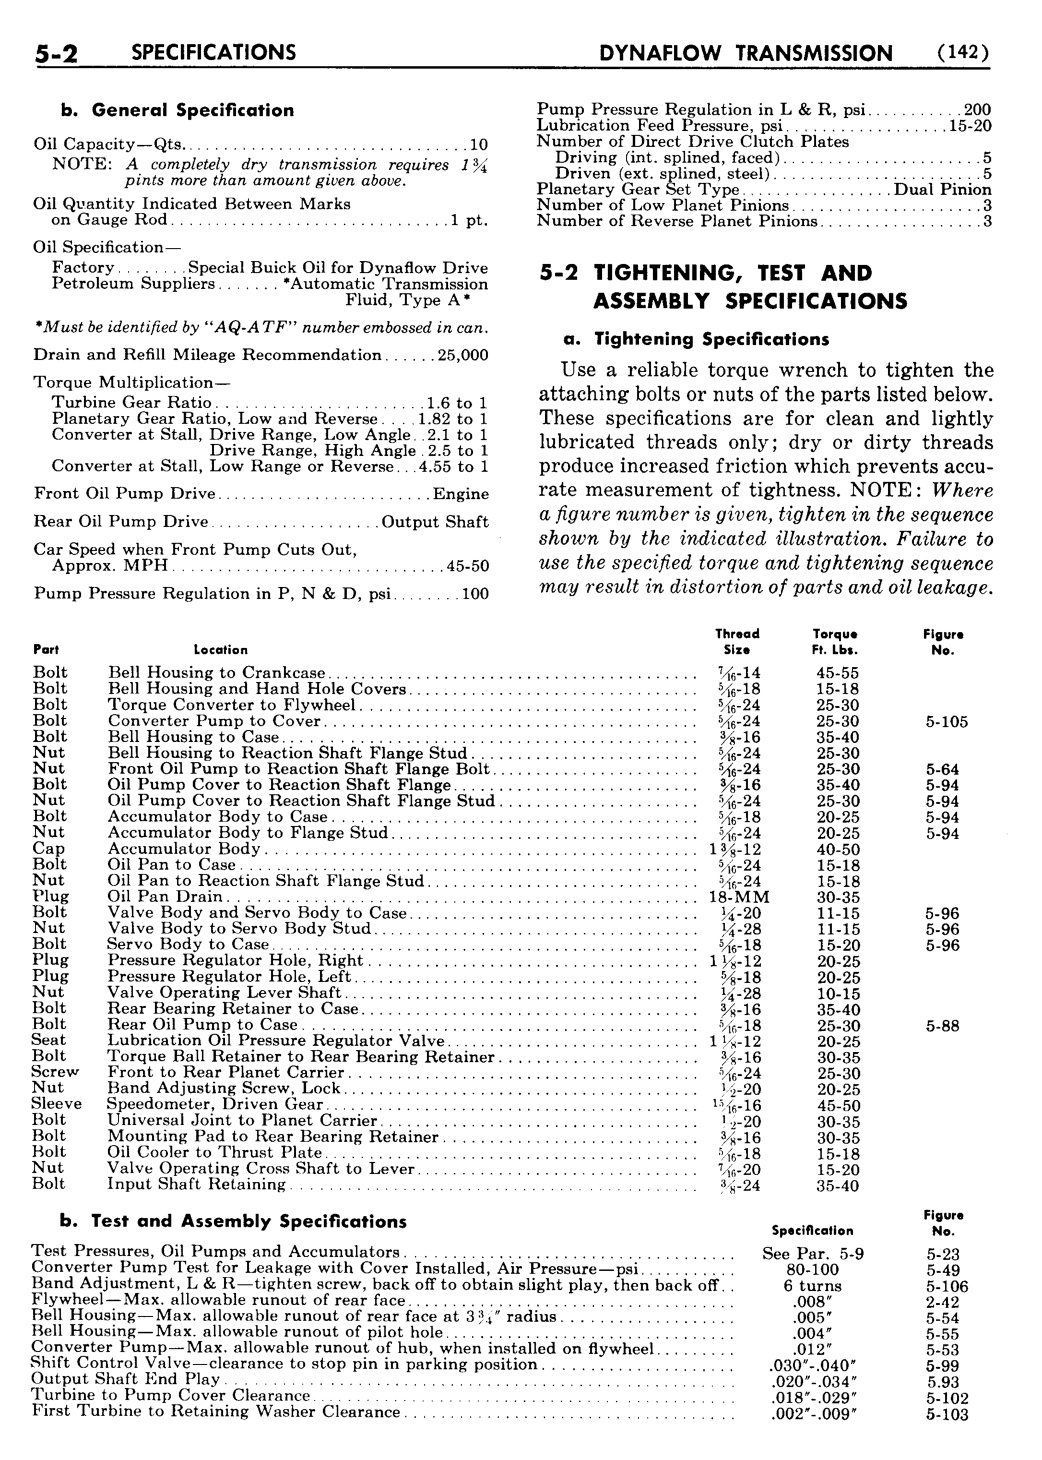 n_06 1955 Buick Shop Manual - Dynaflow-002-002.jpg